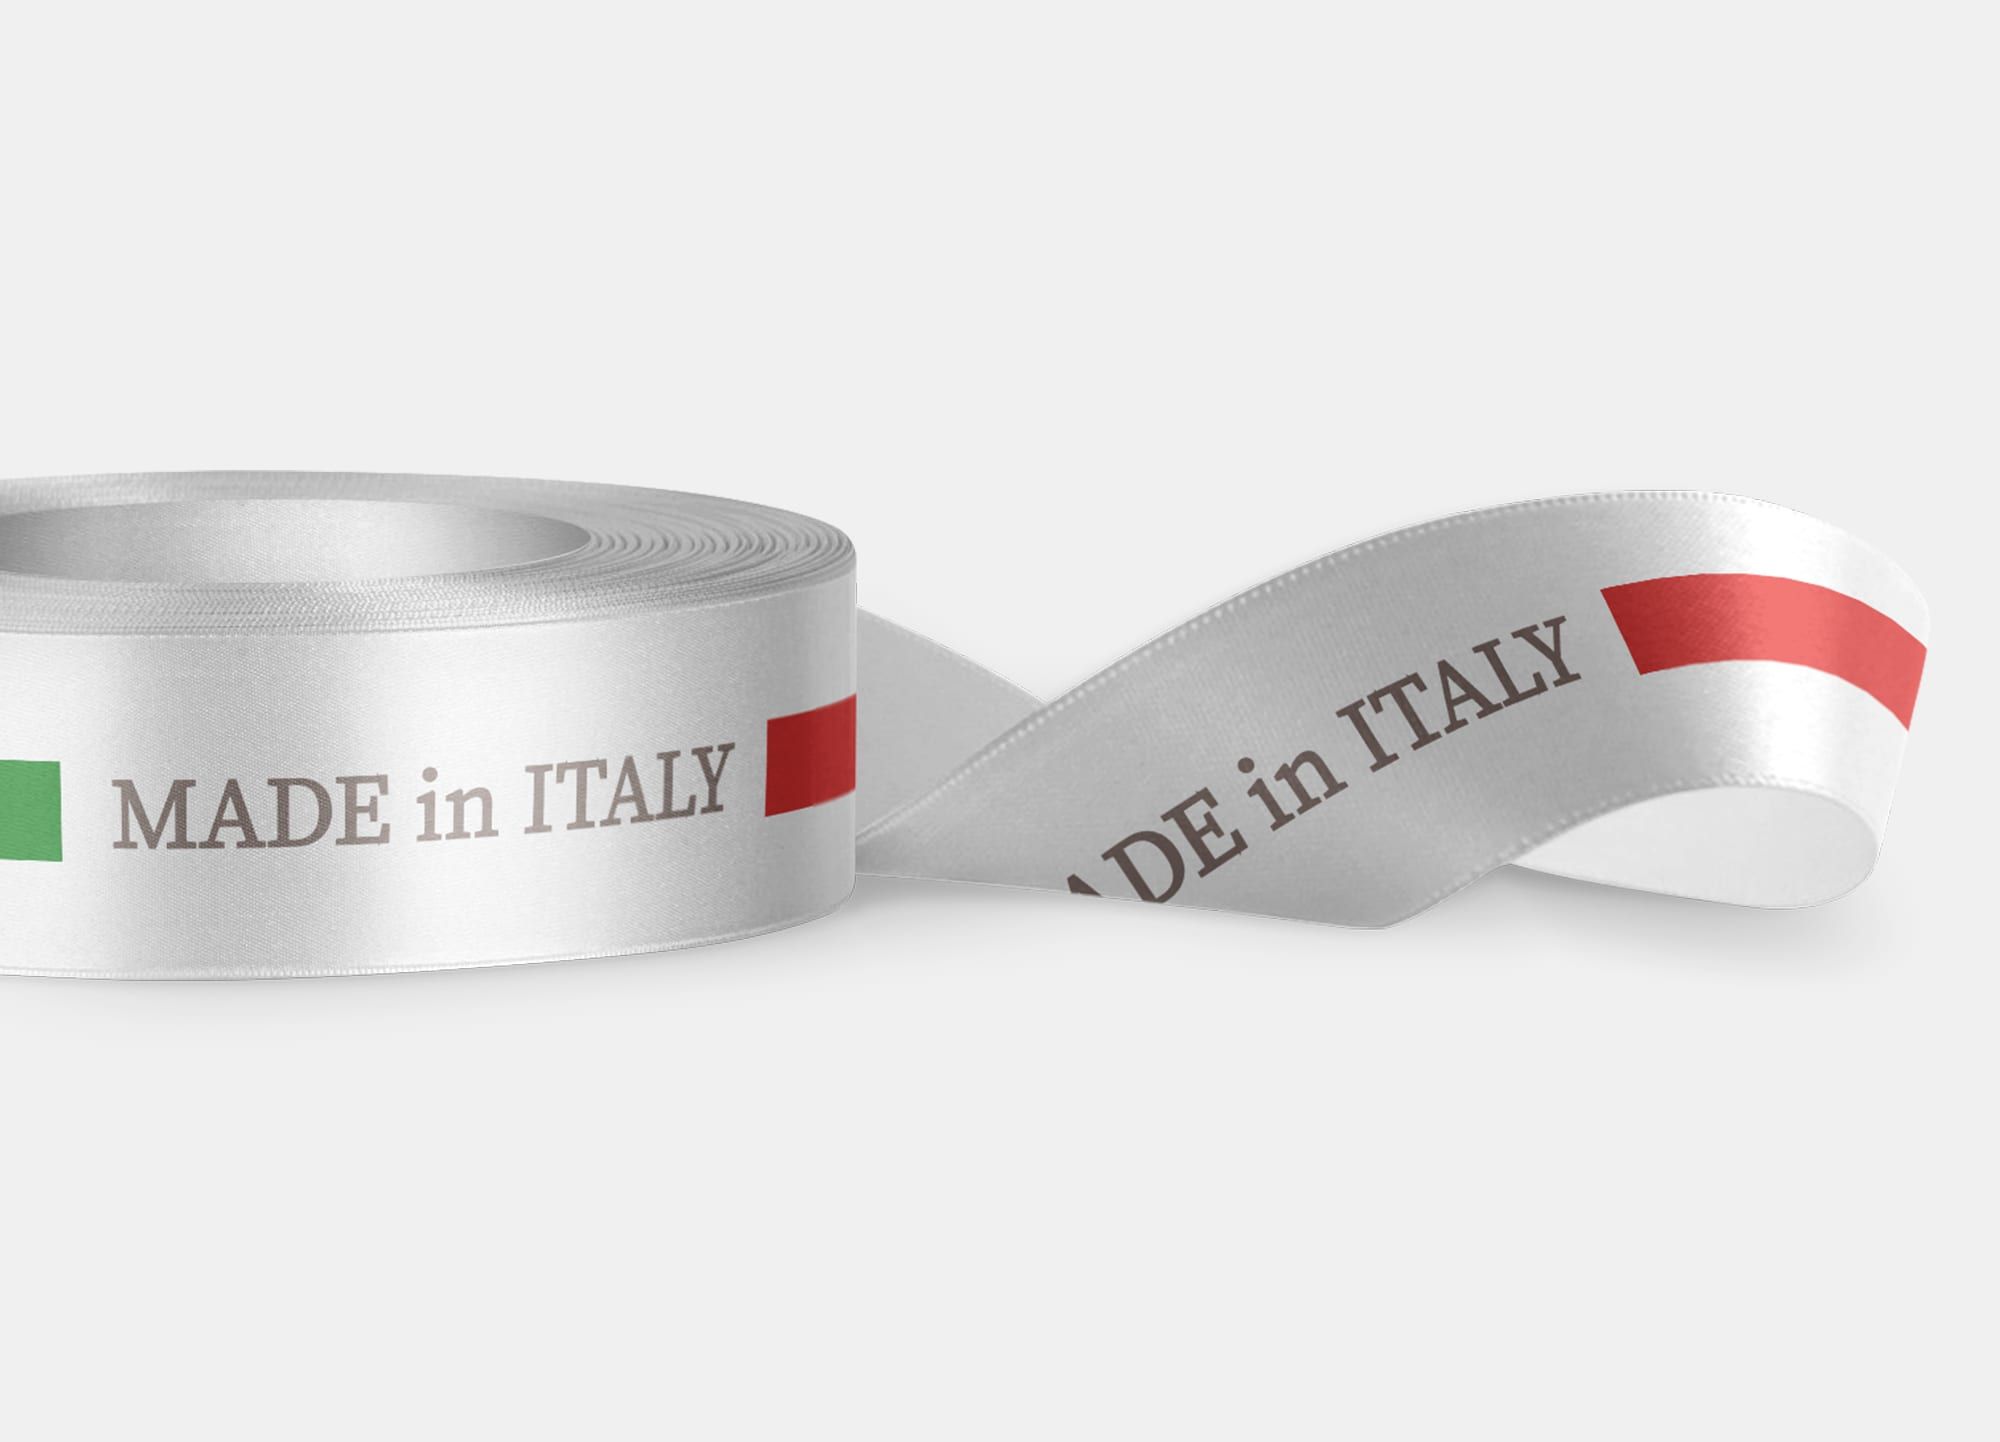 Questo nastro ha un’altezza standard di 15mm ed è l’ideale per impreziosire le tue creazioni realizzate interamente in Italia. Acquista subito il nastro Made in Italy.